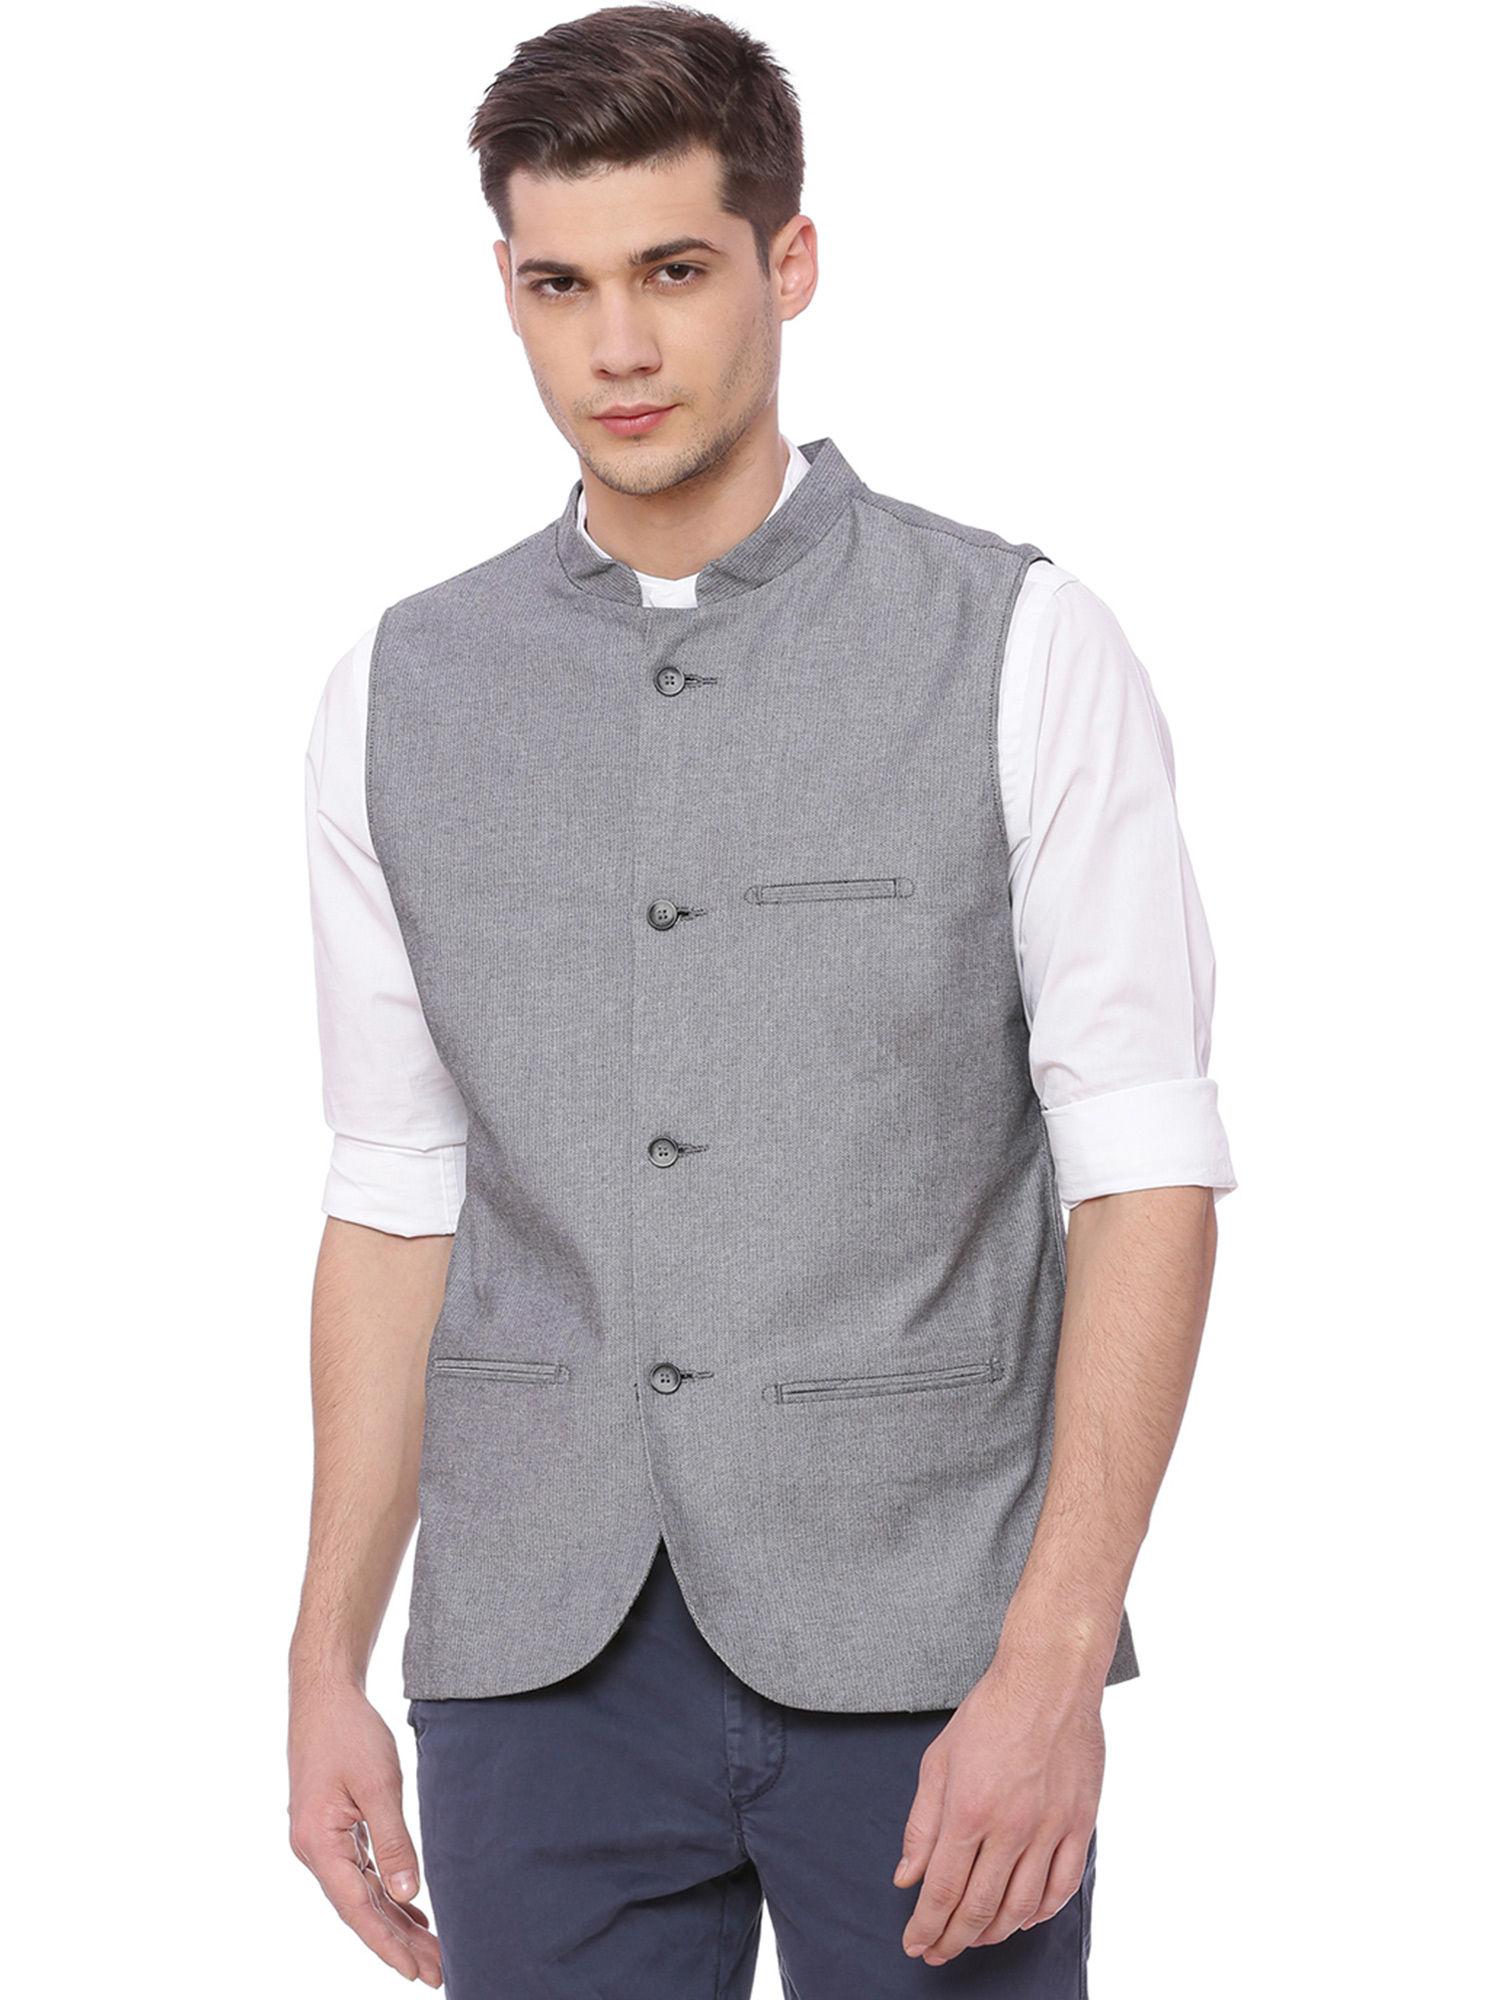 grey self design waistcoat